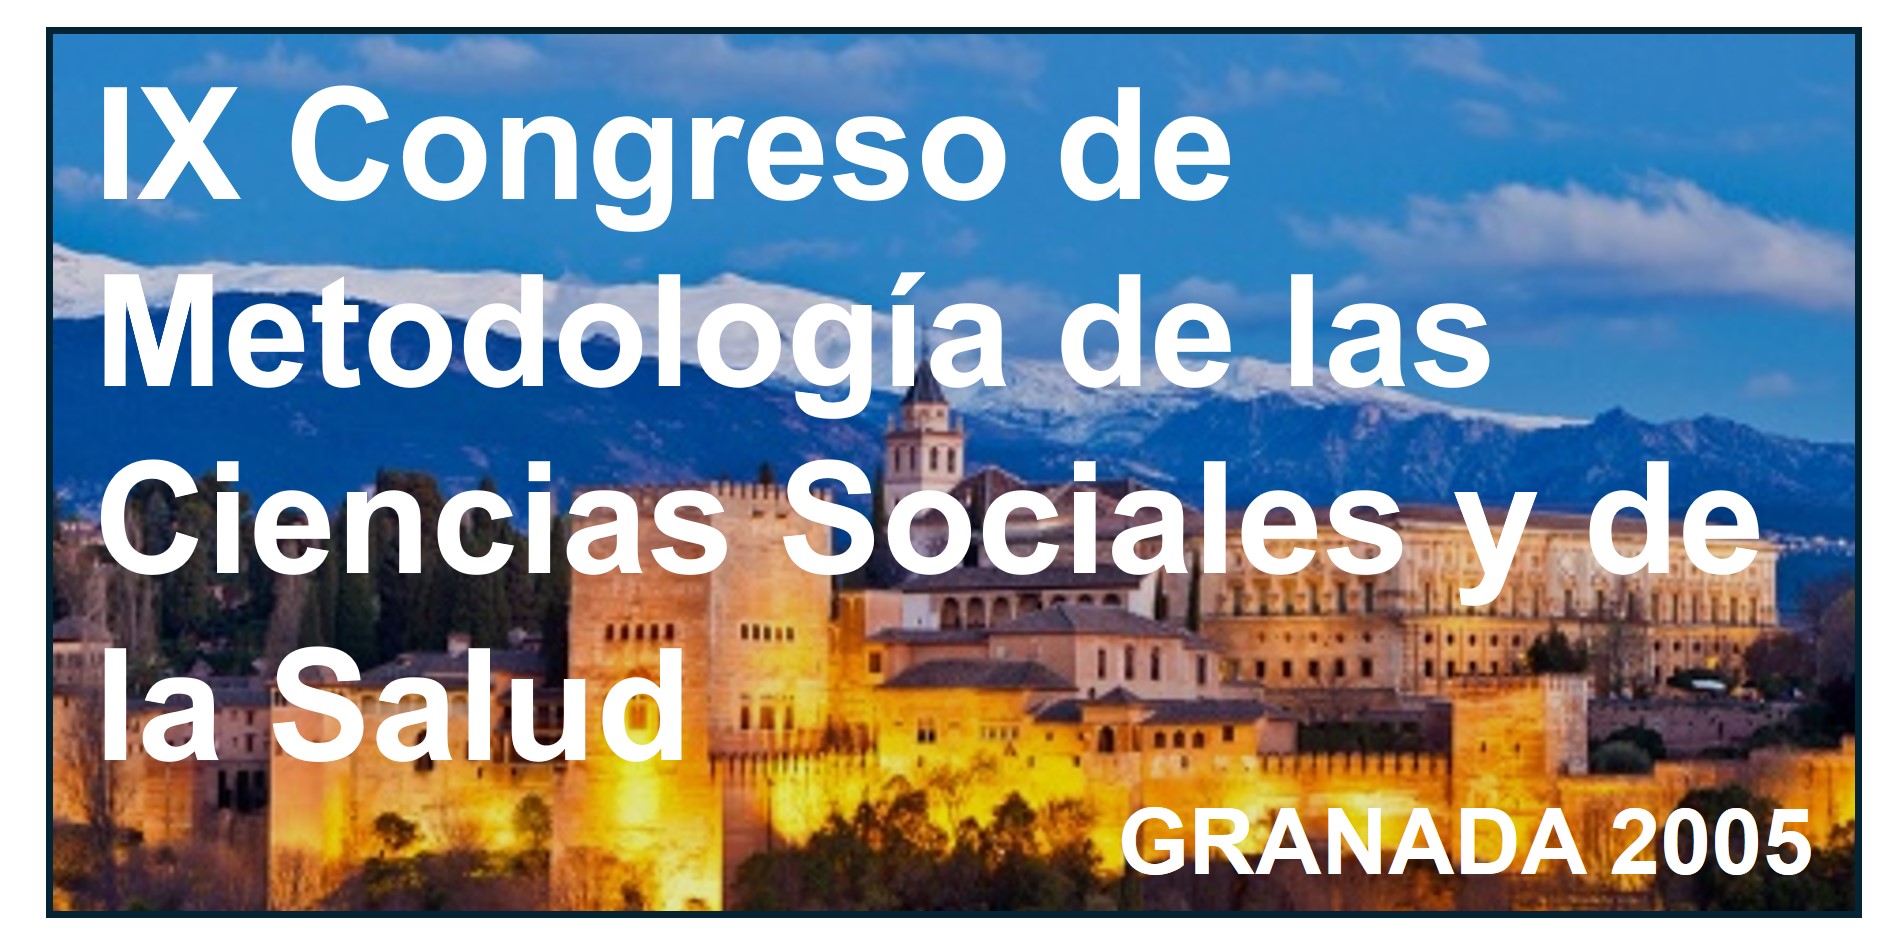    IX Congreso de Metodología de las Ciencias Sociales y de la Salud